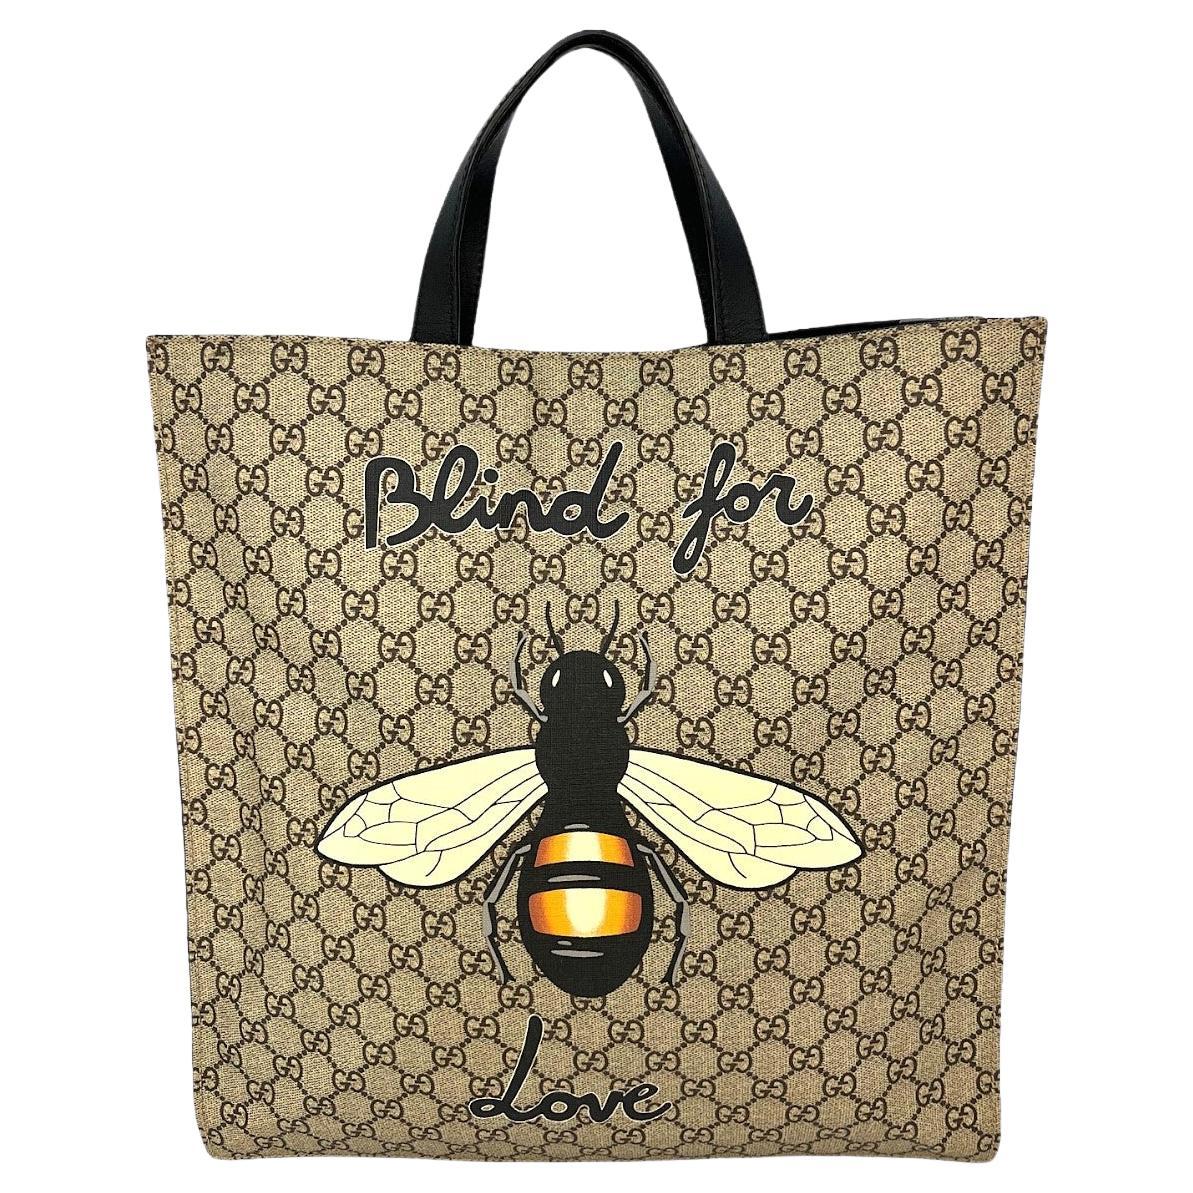 Gucci Linea C Leather Borsa Padlock Medium GG Shoulder Bag,Red/Pink, MSRP  $2,490